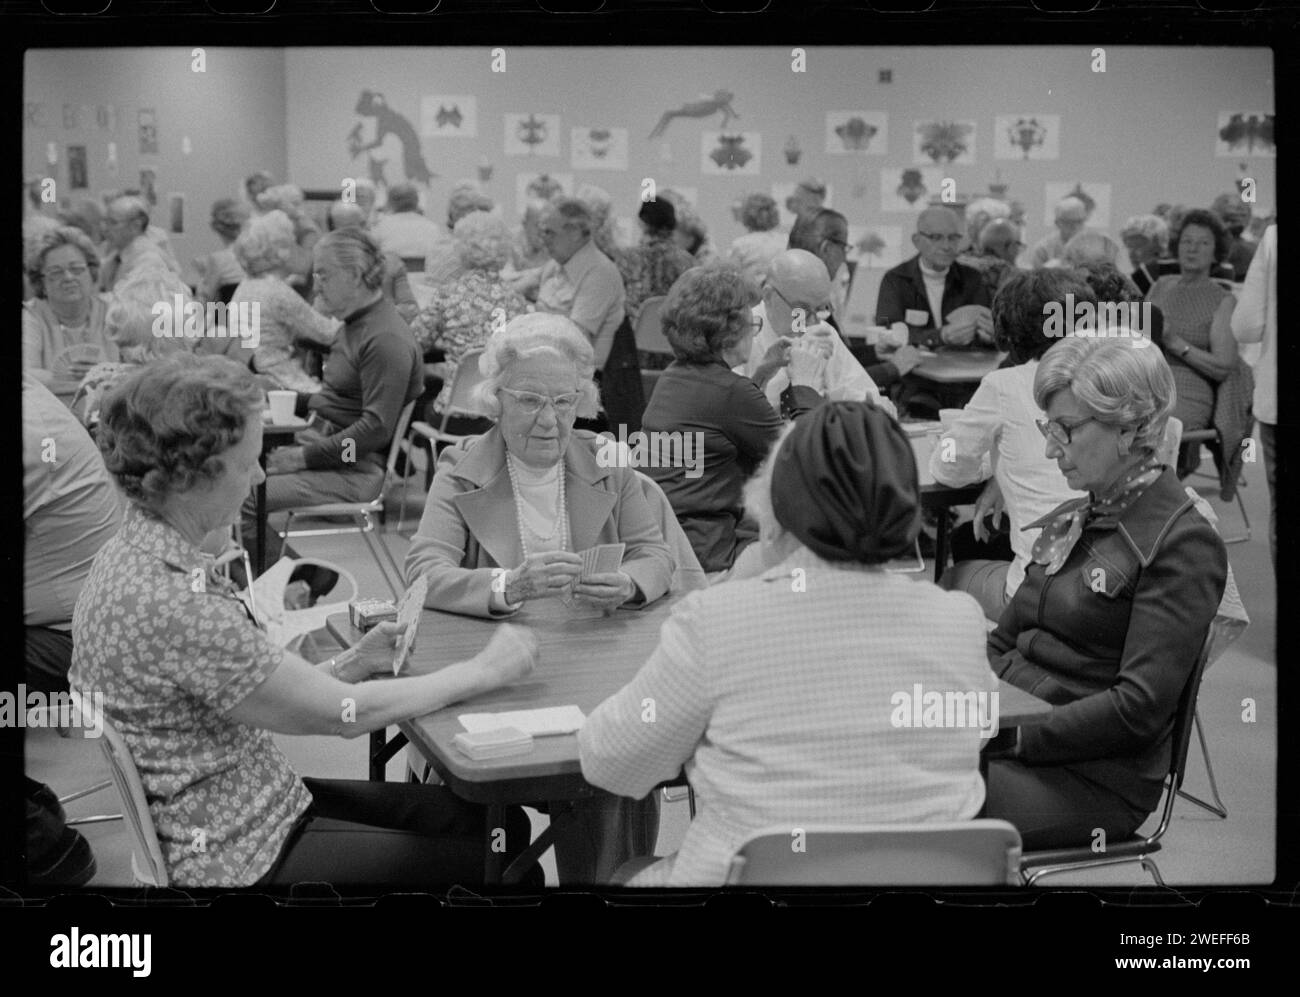 Gli anziani giocano a carte al Thomas Jefferson Community Center, Arlington, Virginia, 5/10/1977. Foto della US News and World Report Magazine Collection Foto Stock